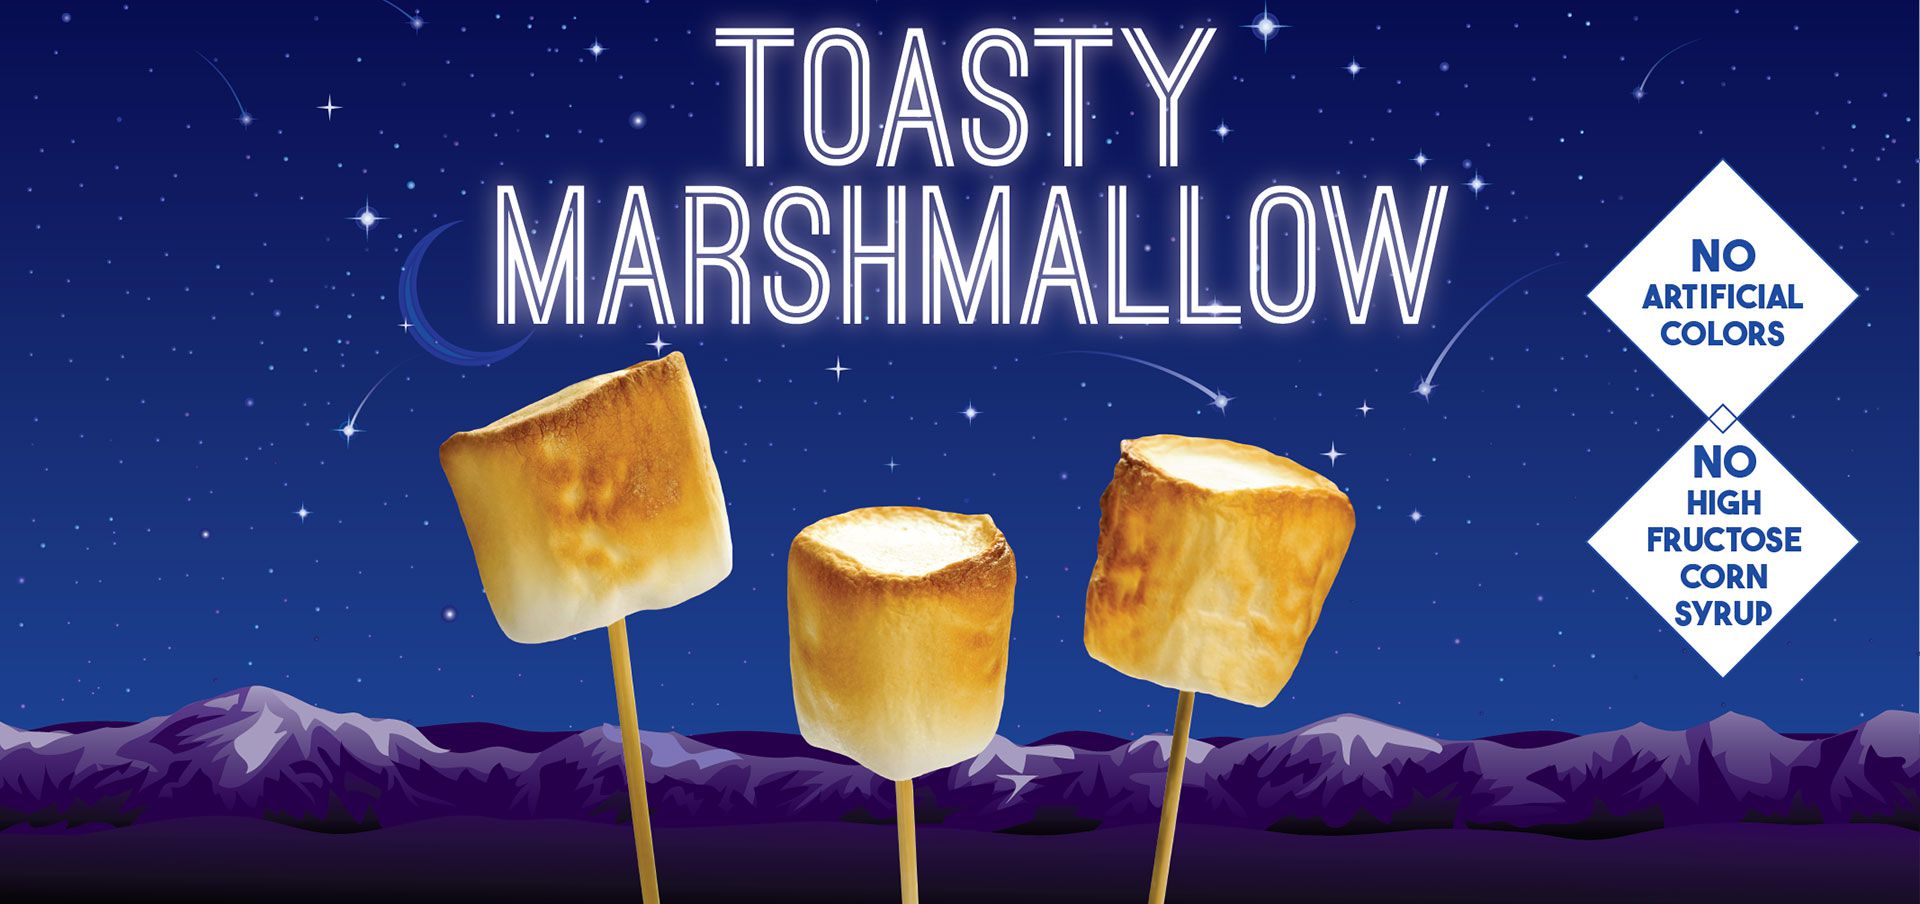 toasty marshmallow label image